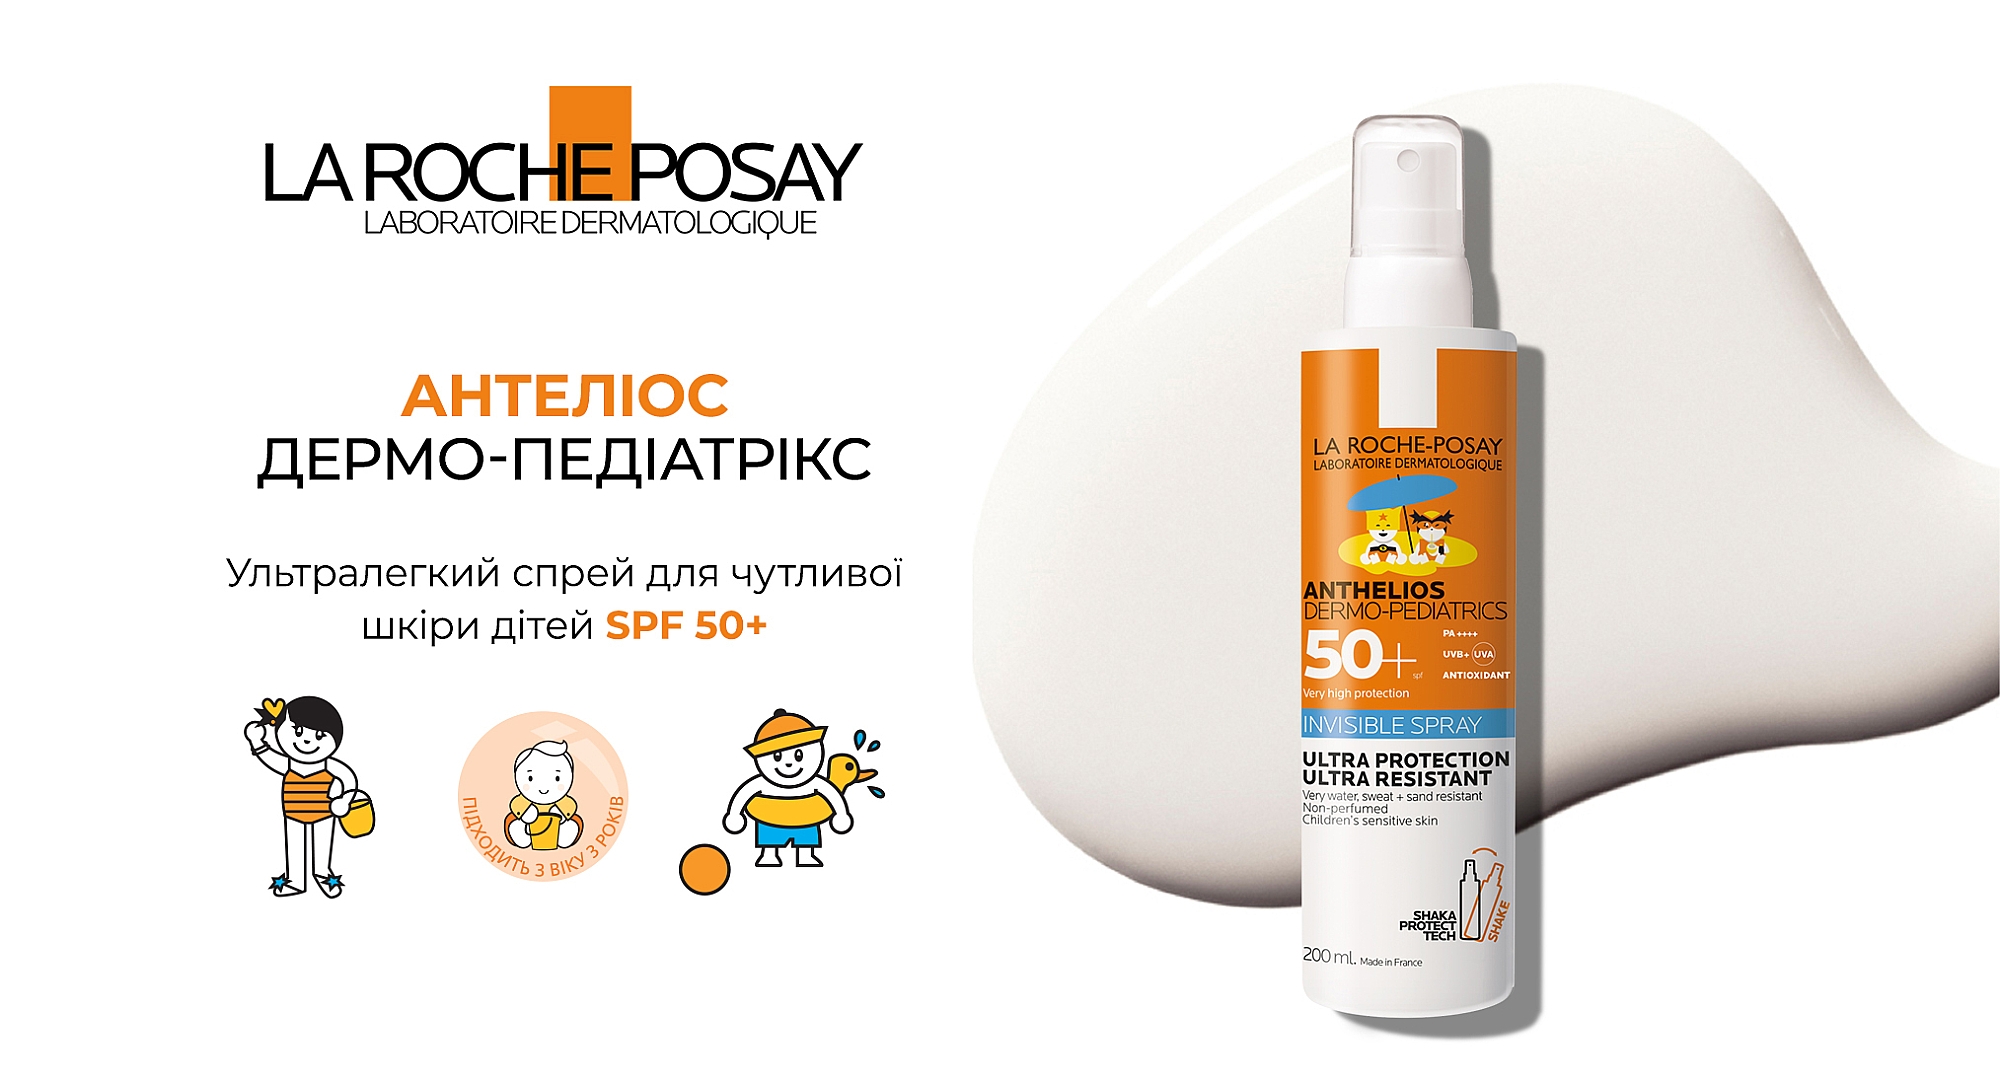 La Roche-Posay Anthelios Dermo-Pediatrics Invisible Spray